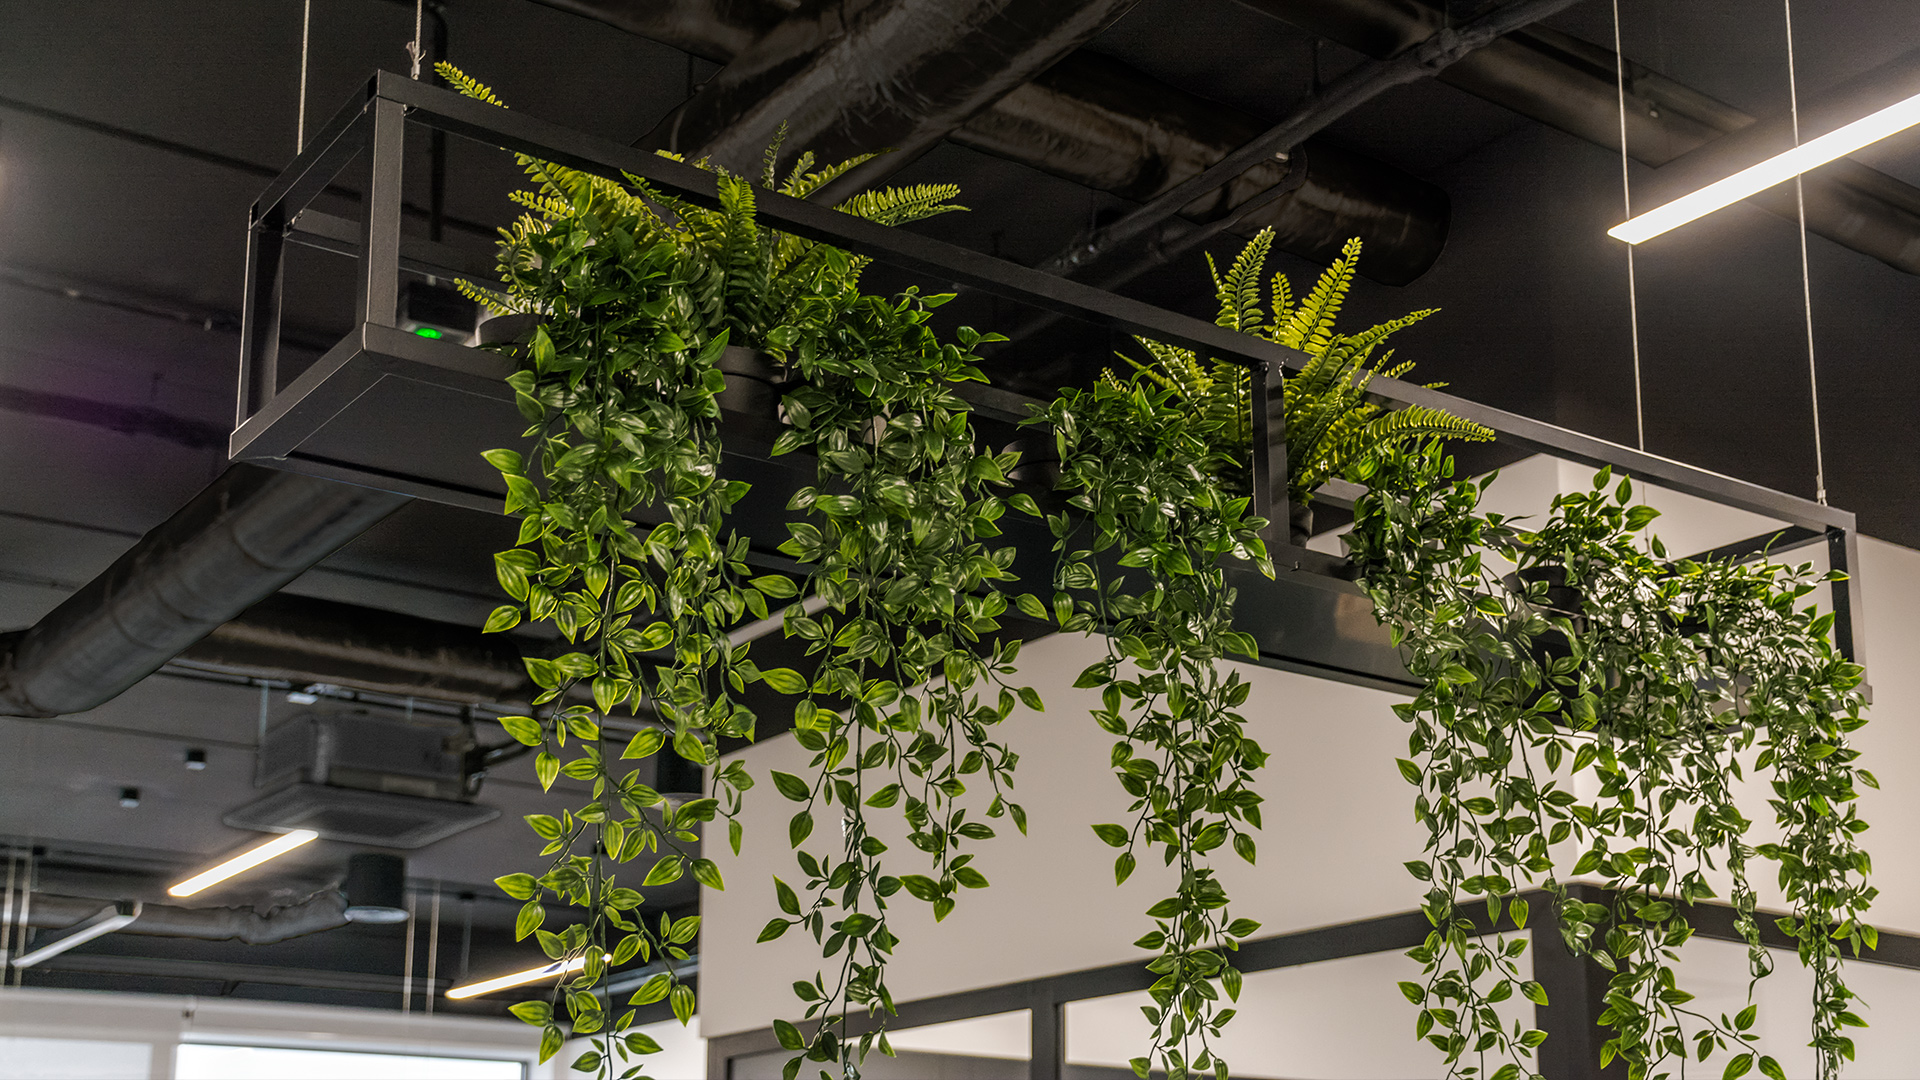 Wiszące kwietniki zostały zaprojektowane specjalnie dla open space naszego klienta. Ich prosta forma doskonale eksponuje rośliny w biurowym wnętrzu.